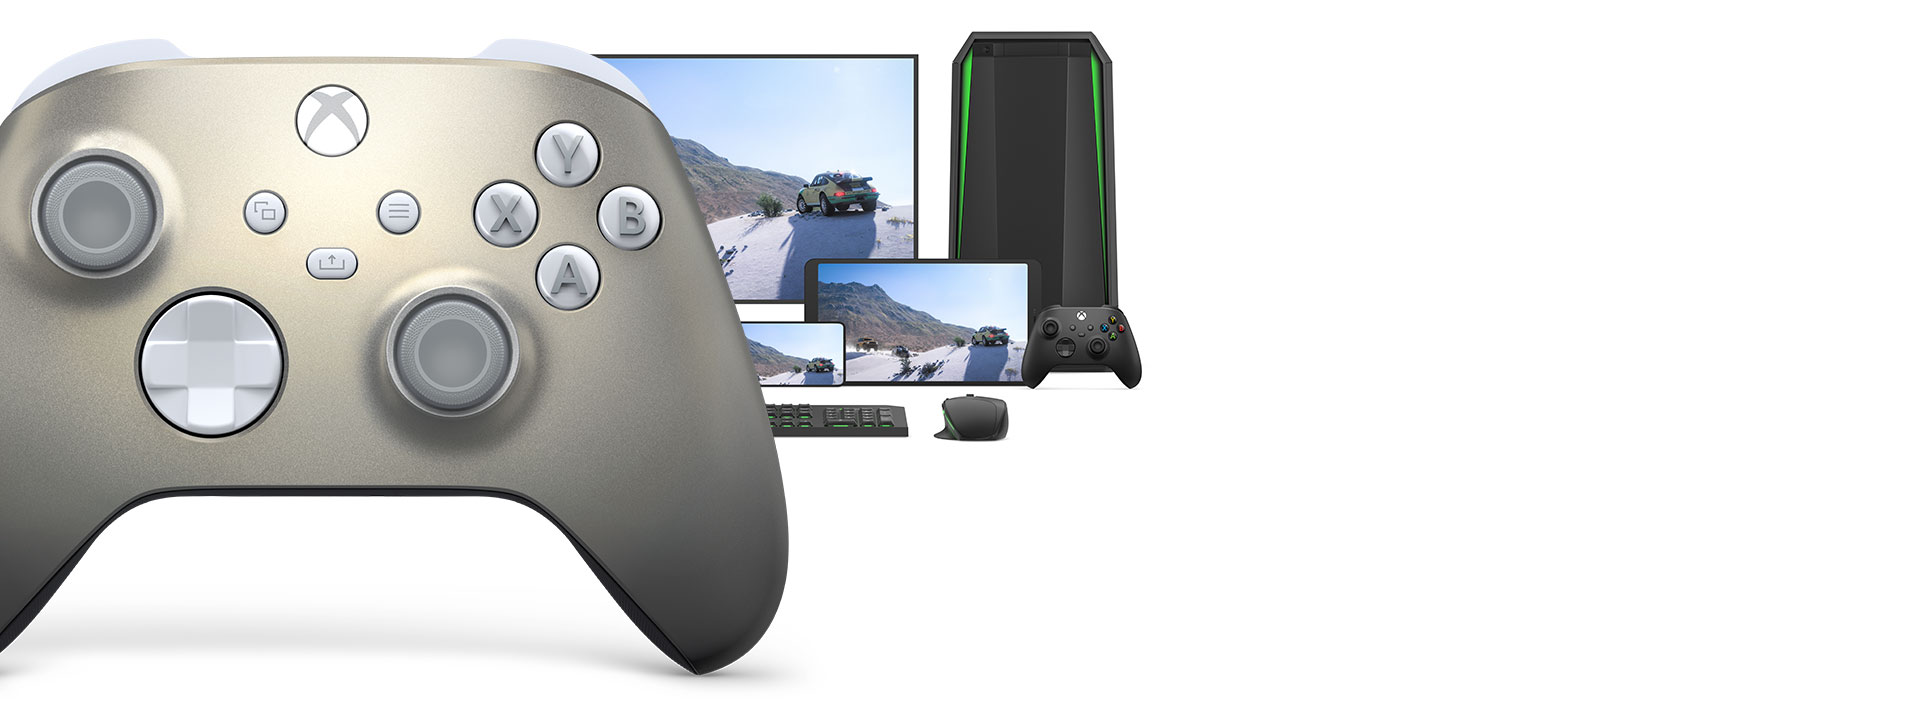 Ασύρματο χειριστήριο Xbox - Lunar Shift Special Edition με υπολογιστή, τηλεόραση και ένα Xbox Series S